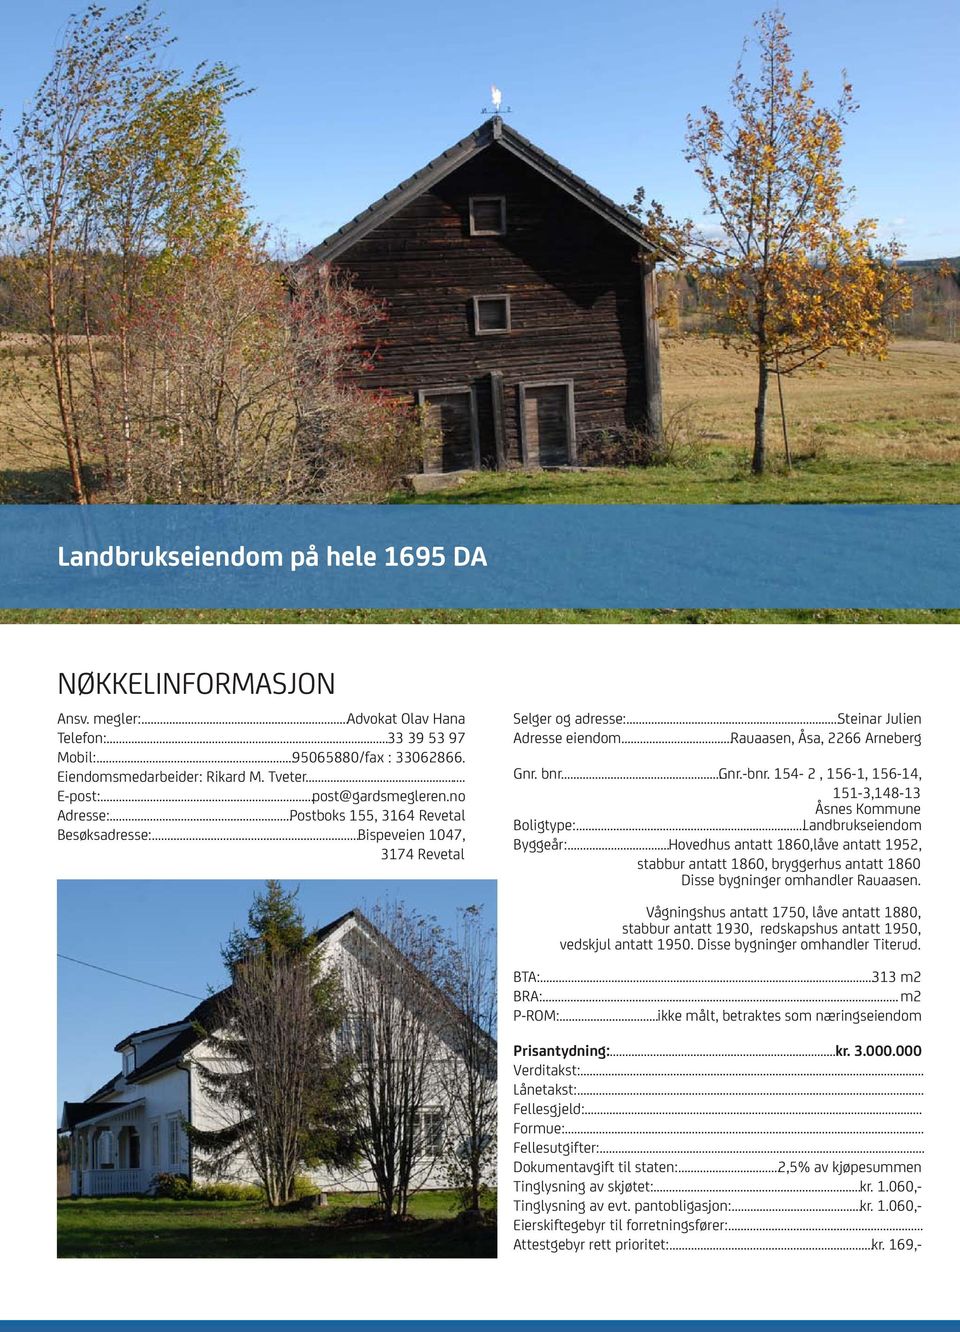 bnr...gnr.-bnr. 154-2, 156-1, 156-14, 151-3,148-13 Åsnes Kommune Boligtype:...Landbrukseiendom Byggeår:.